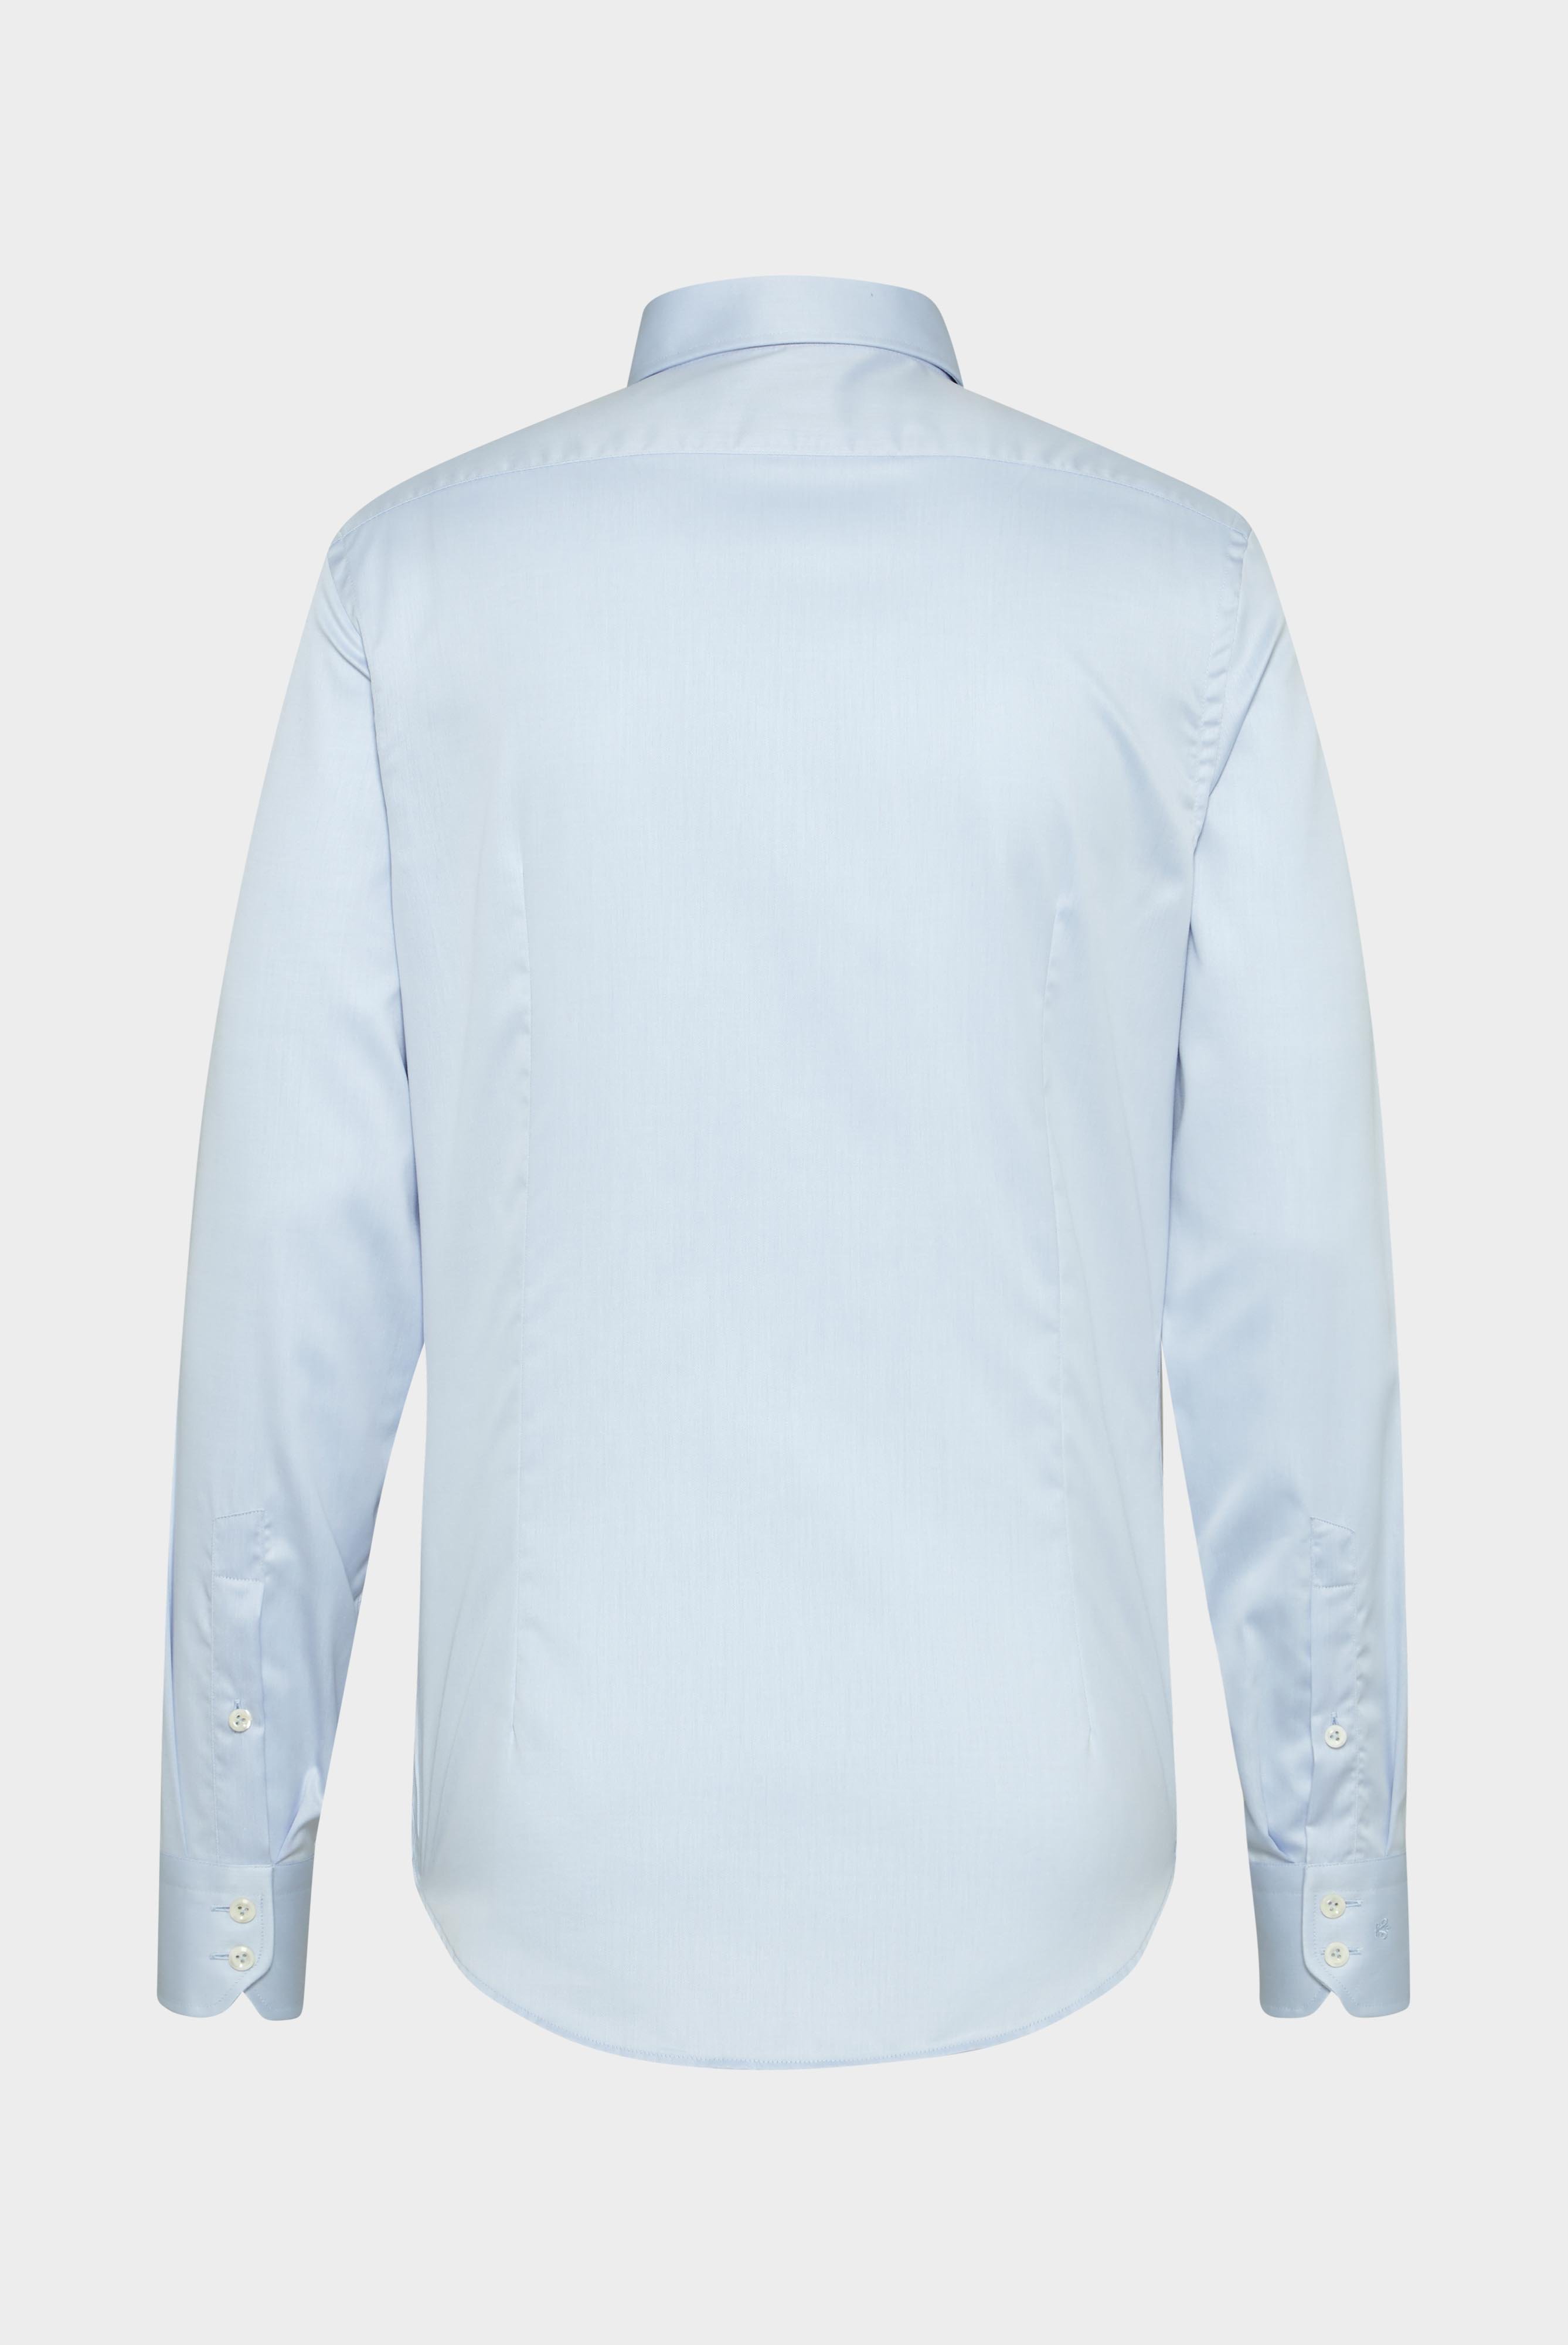 Bügelleichte Hemden+Bügelfreies Twill Hemd Slim Fit+20.2019.BQ.132241.720.39